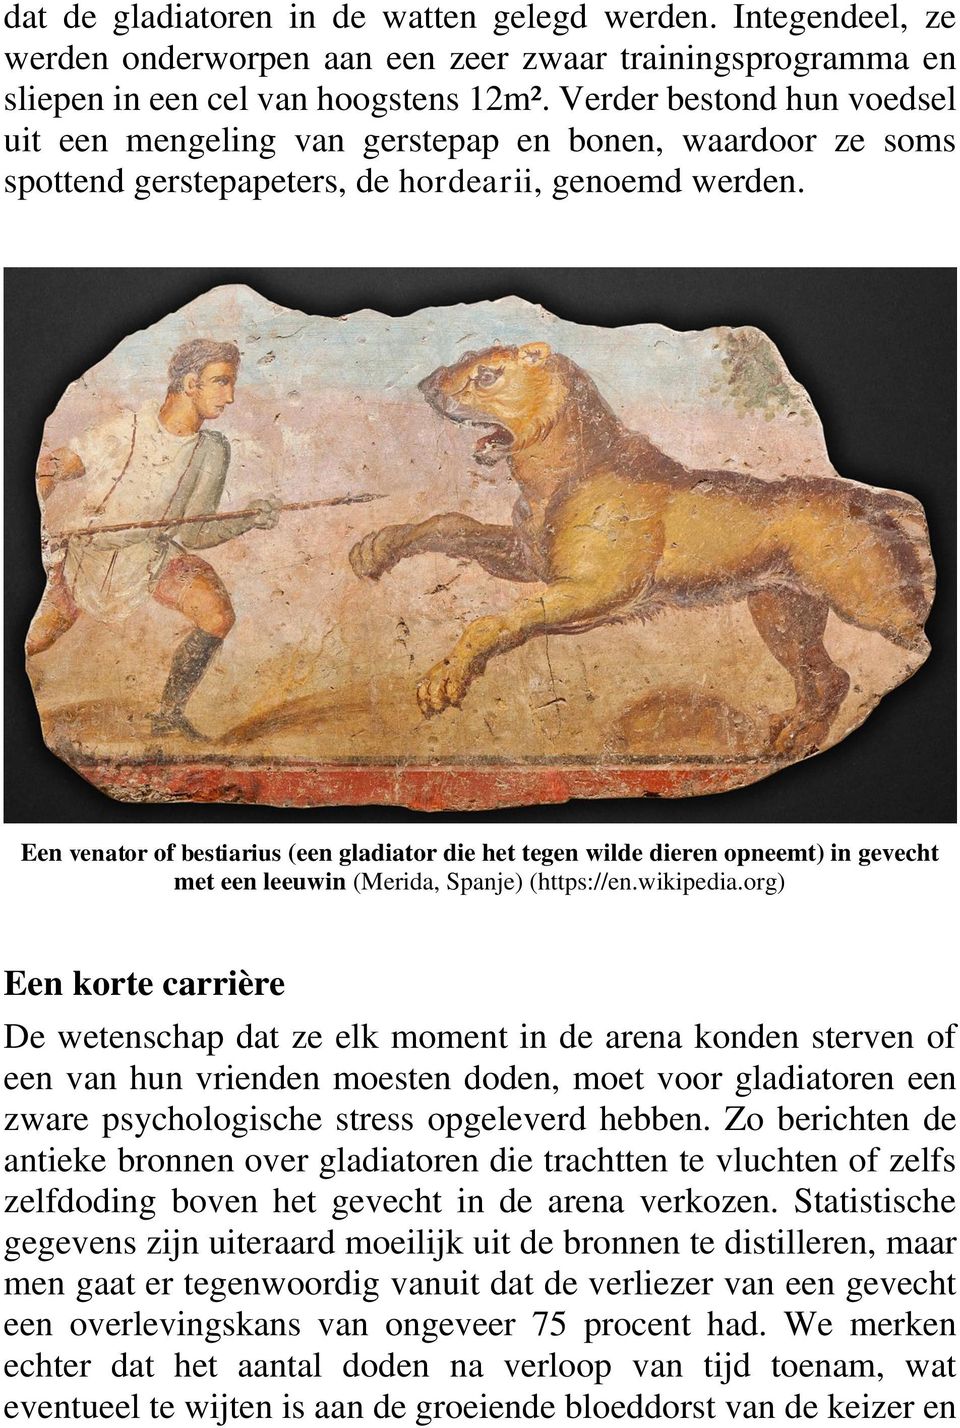 Een venator of bestiarius (een gladiator die het tegen wilde dieren opneemt) in gevecht met een leeuwin (Merida, Spanje) (https://en.wikipedia.